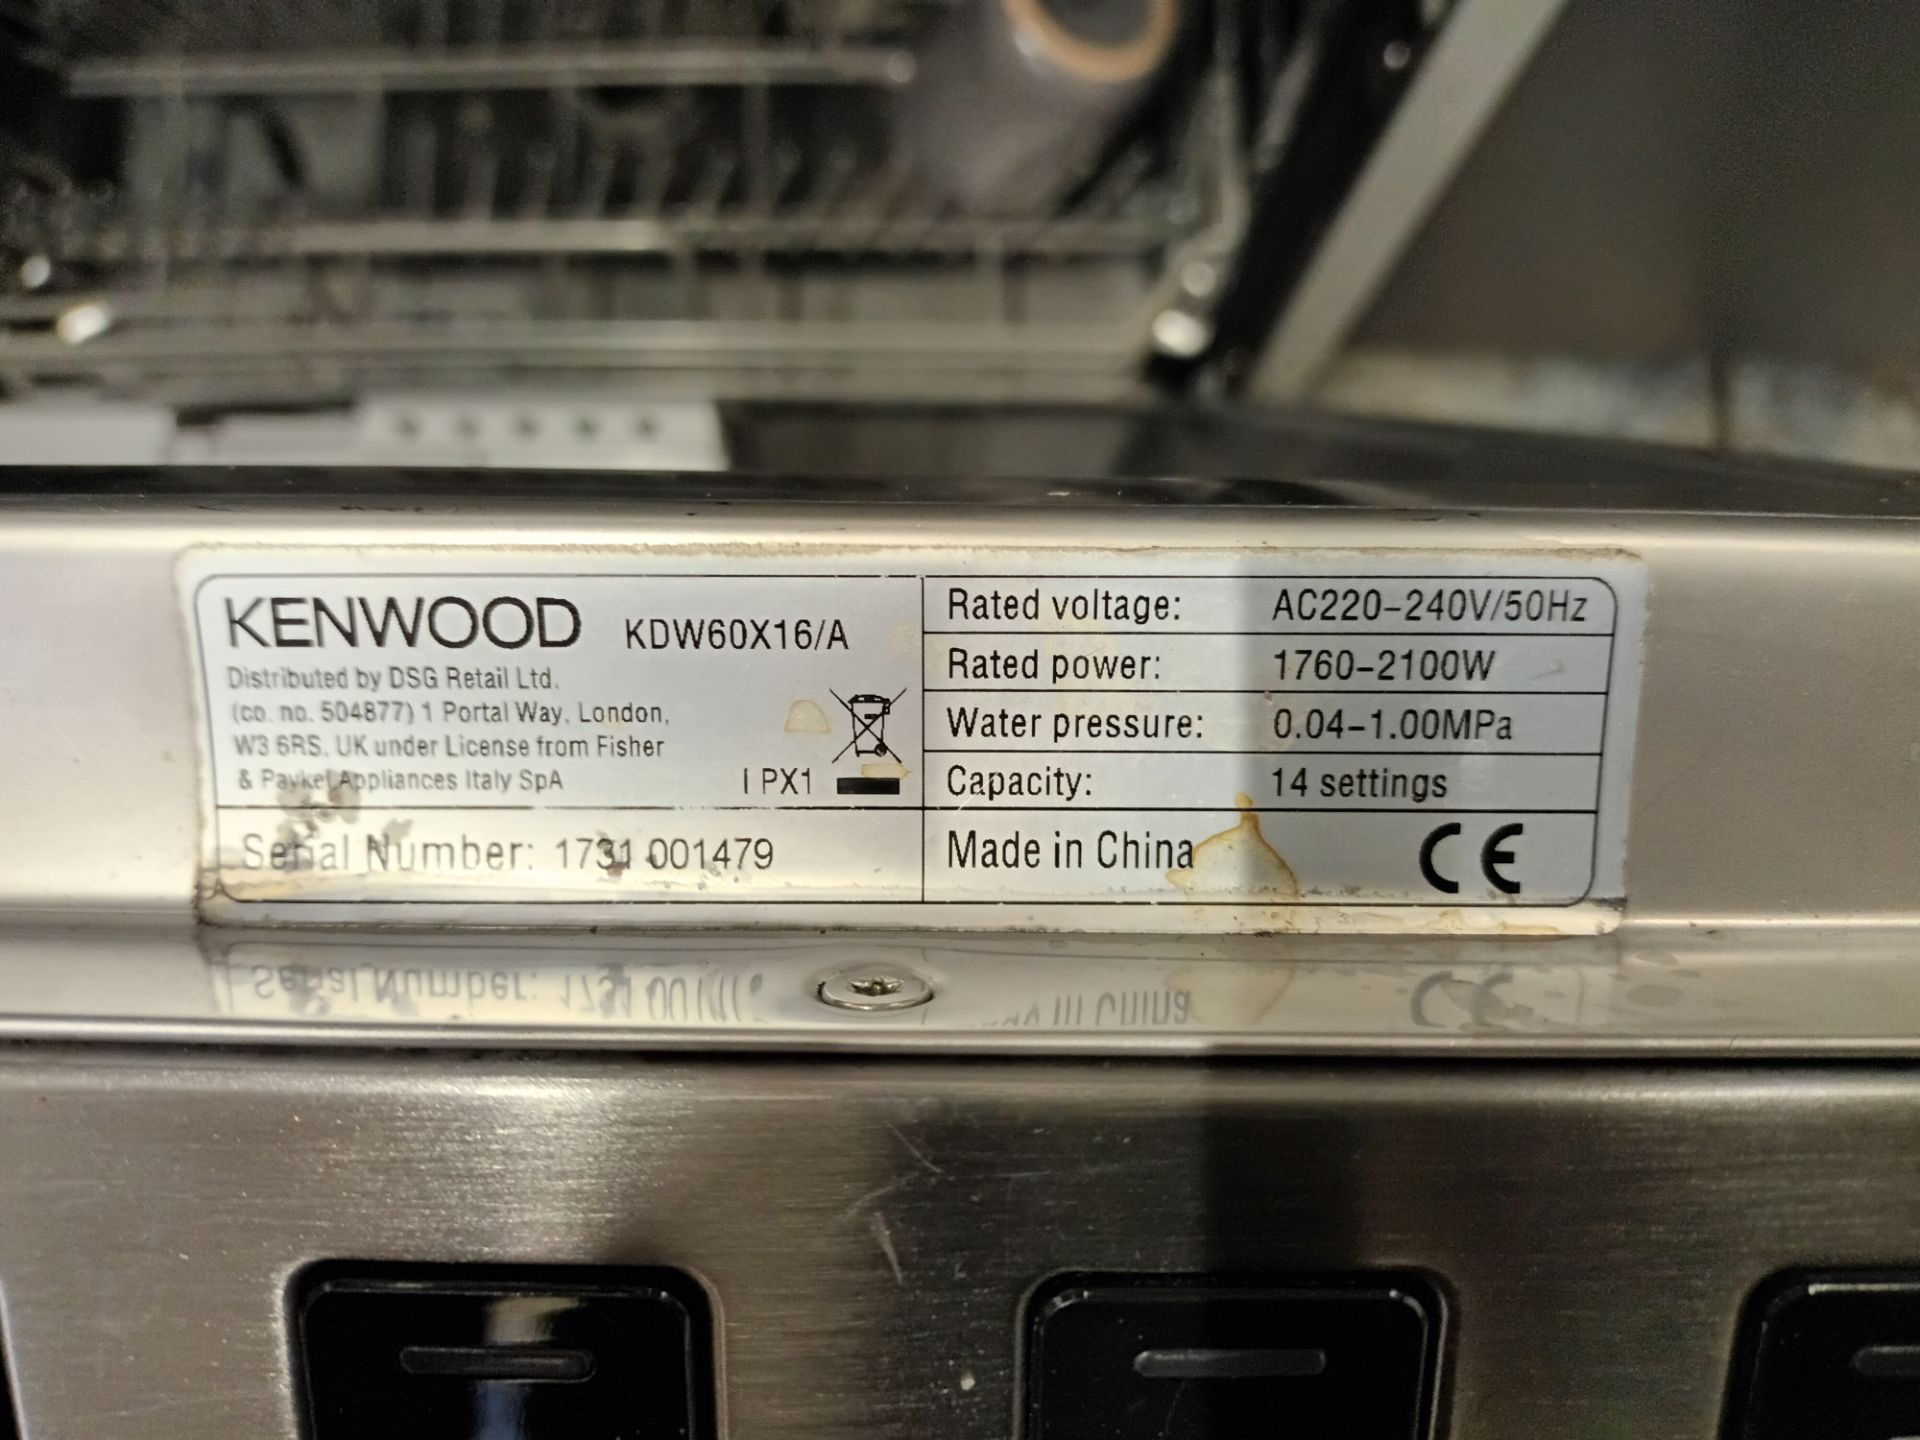 Kenwood KDW60X16/A dishwasher - Image 2 of 3